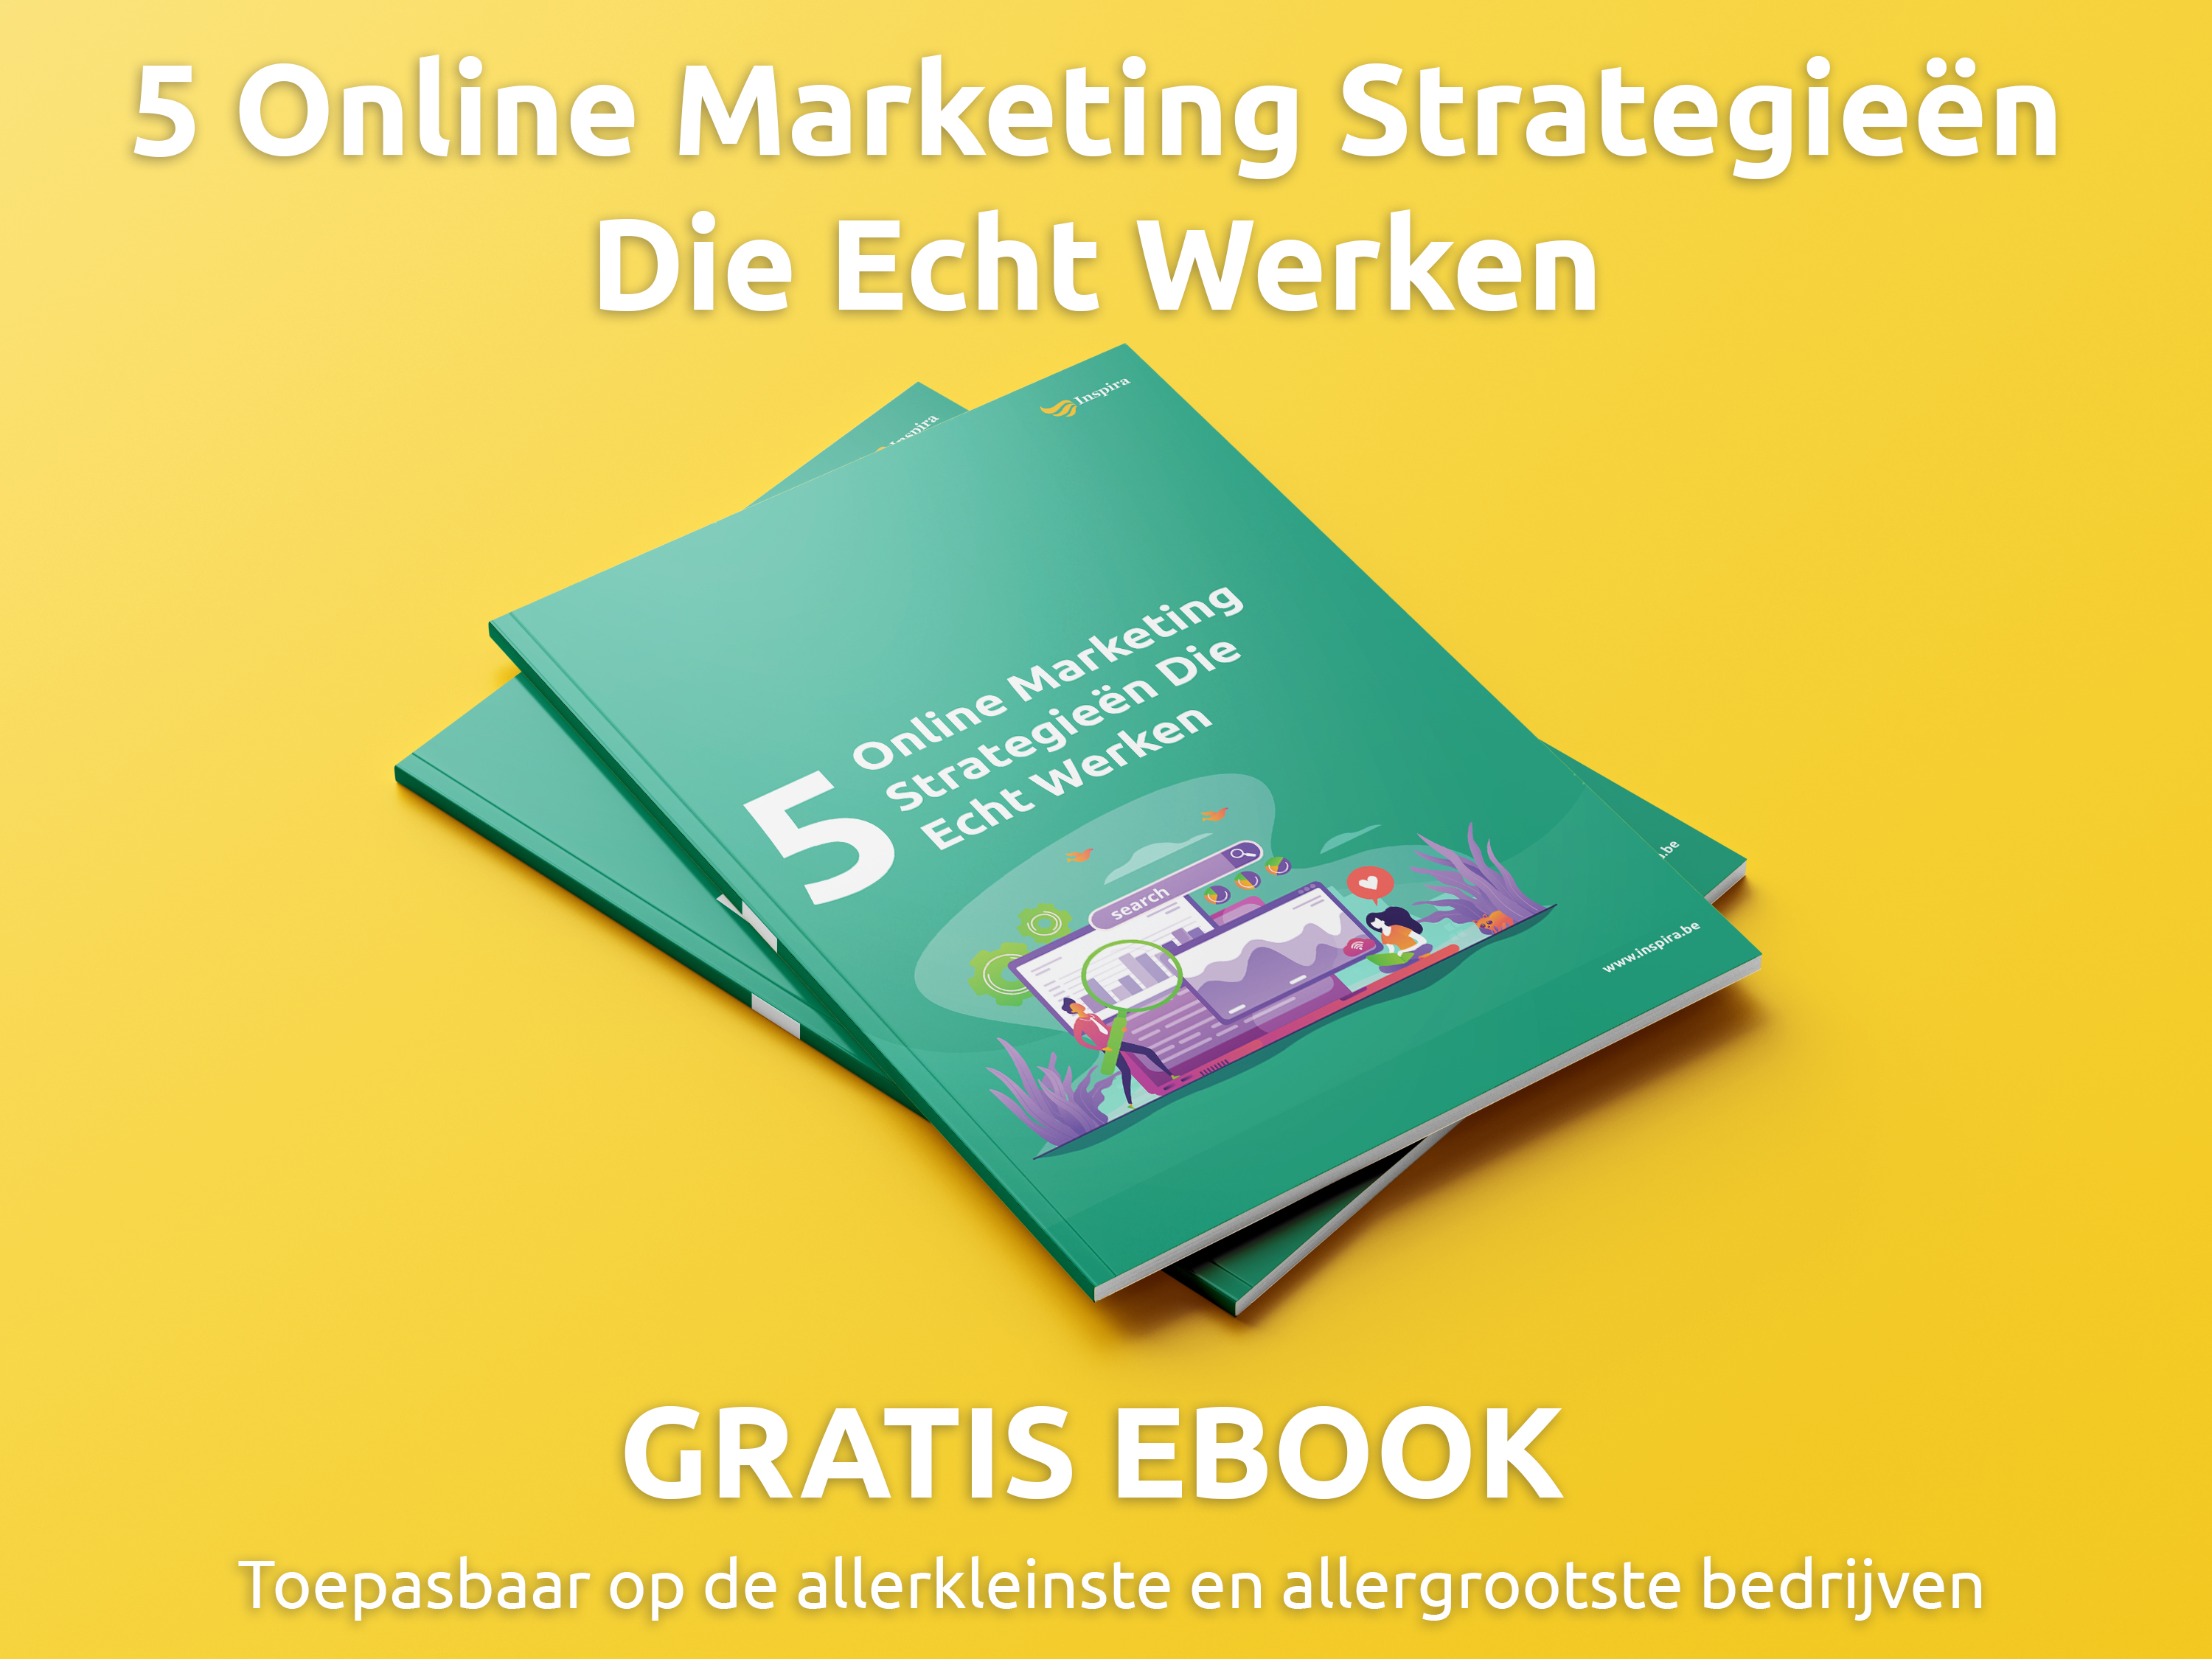 Gratis eBook: 5 Online Marketing Strategieën Die Echt werken